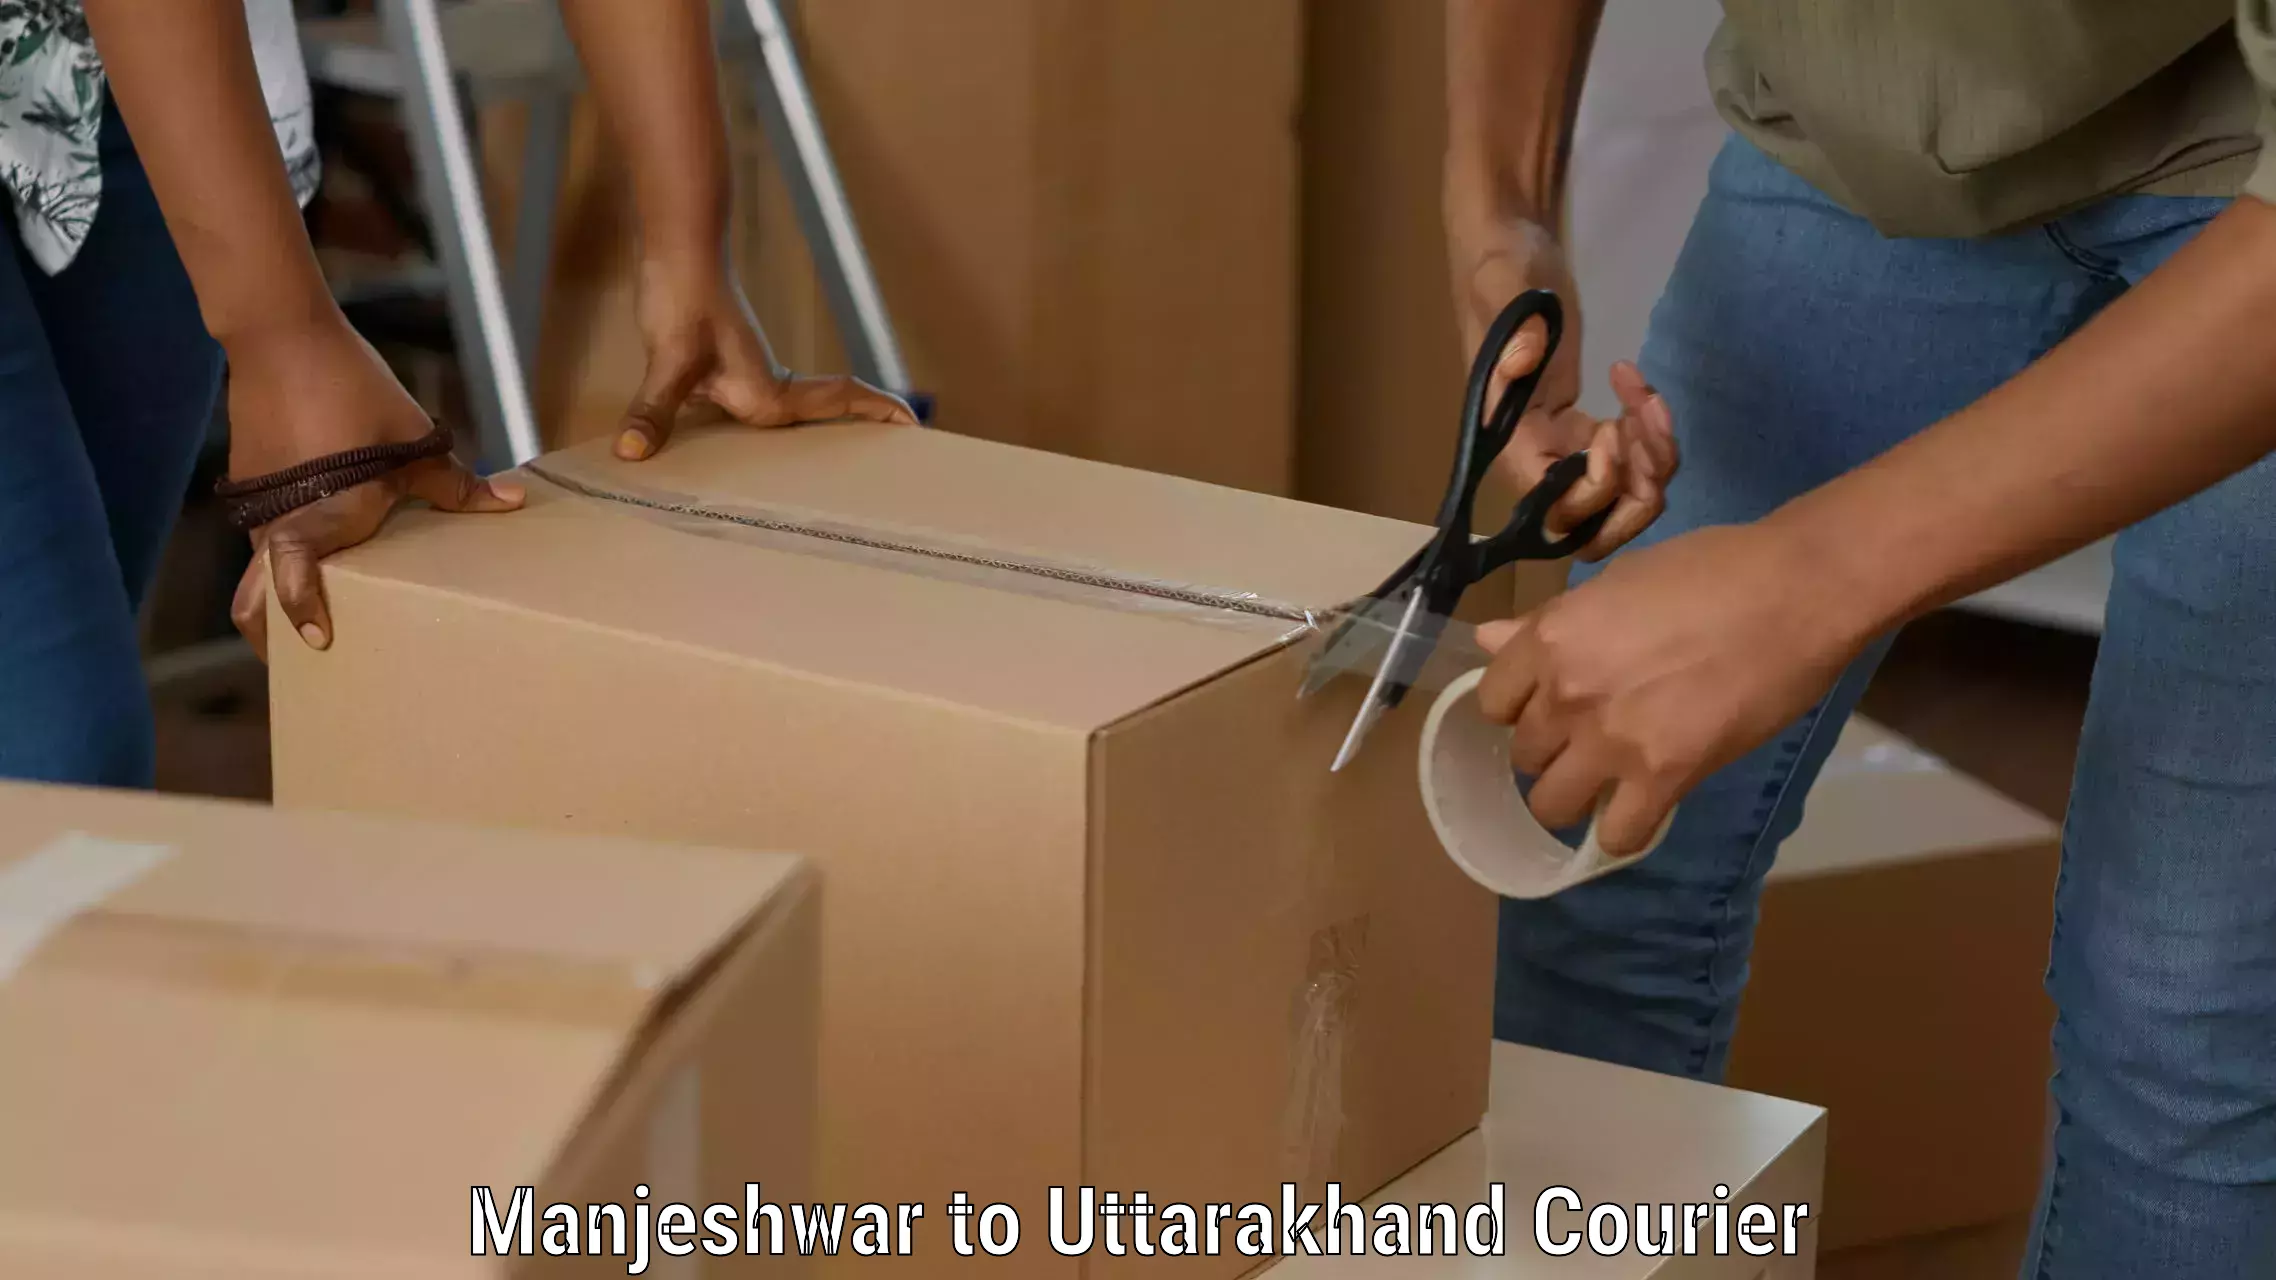 Global courier networks Manjeshwar to Uttarakhand